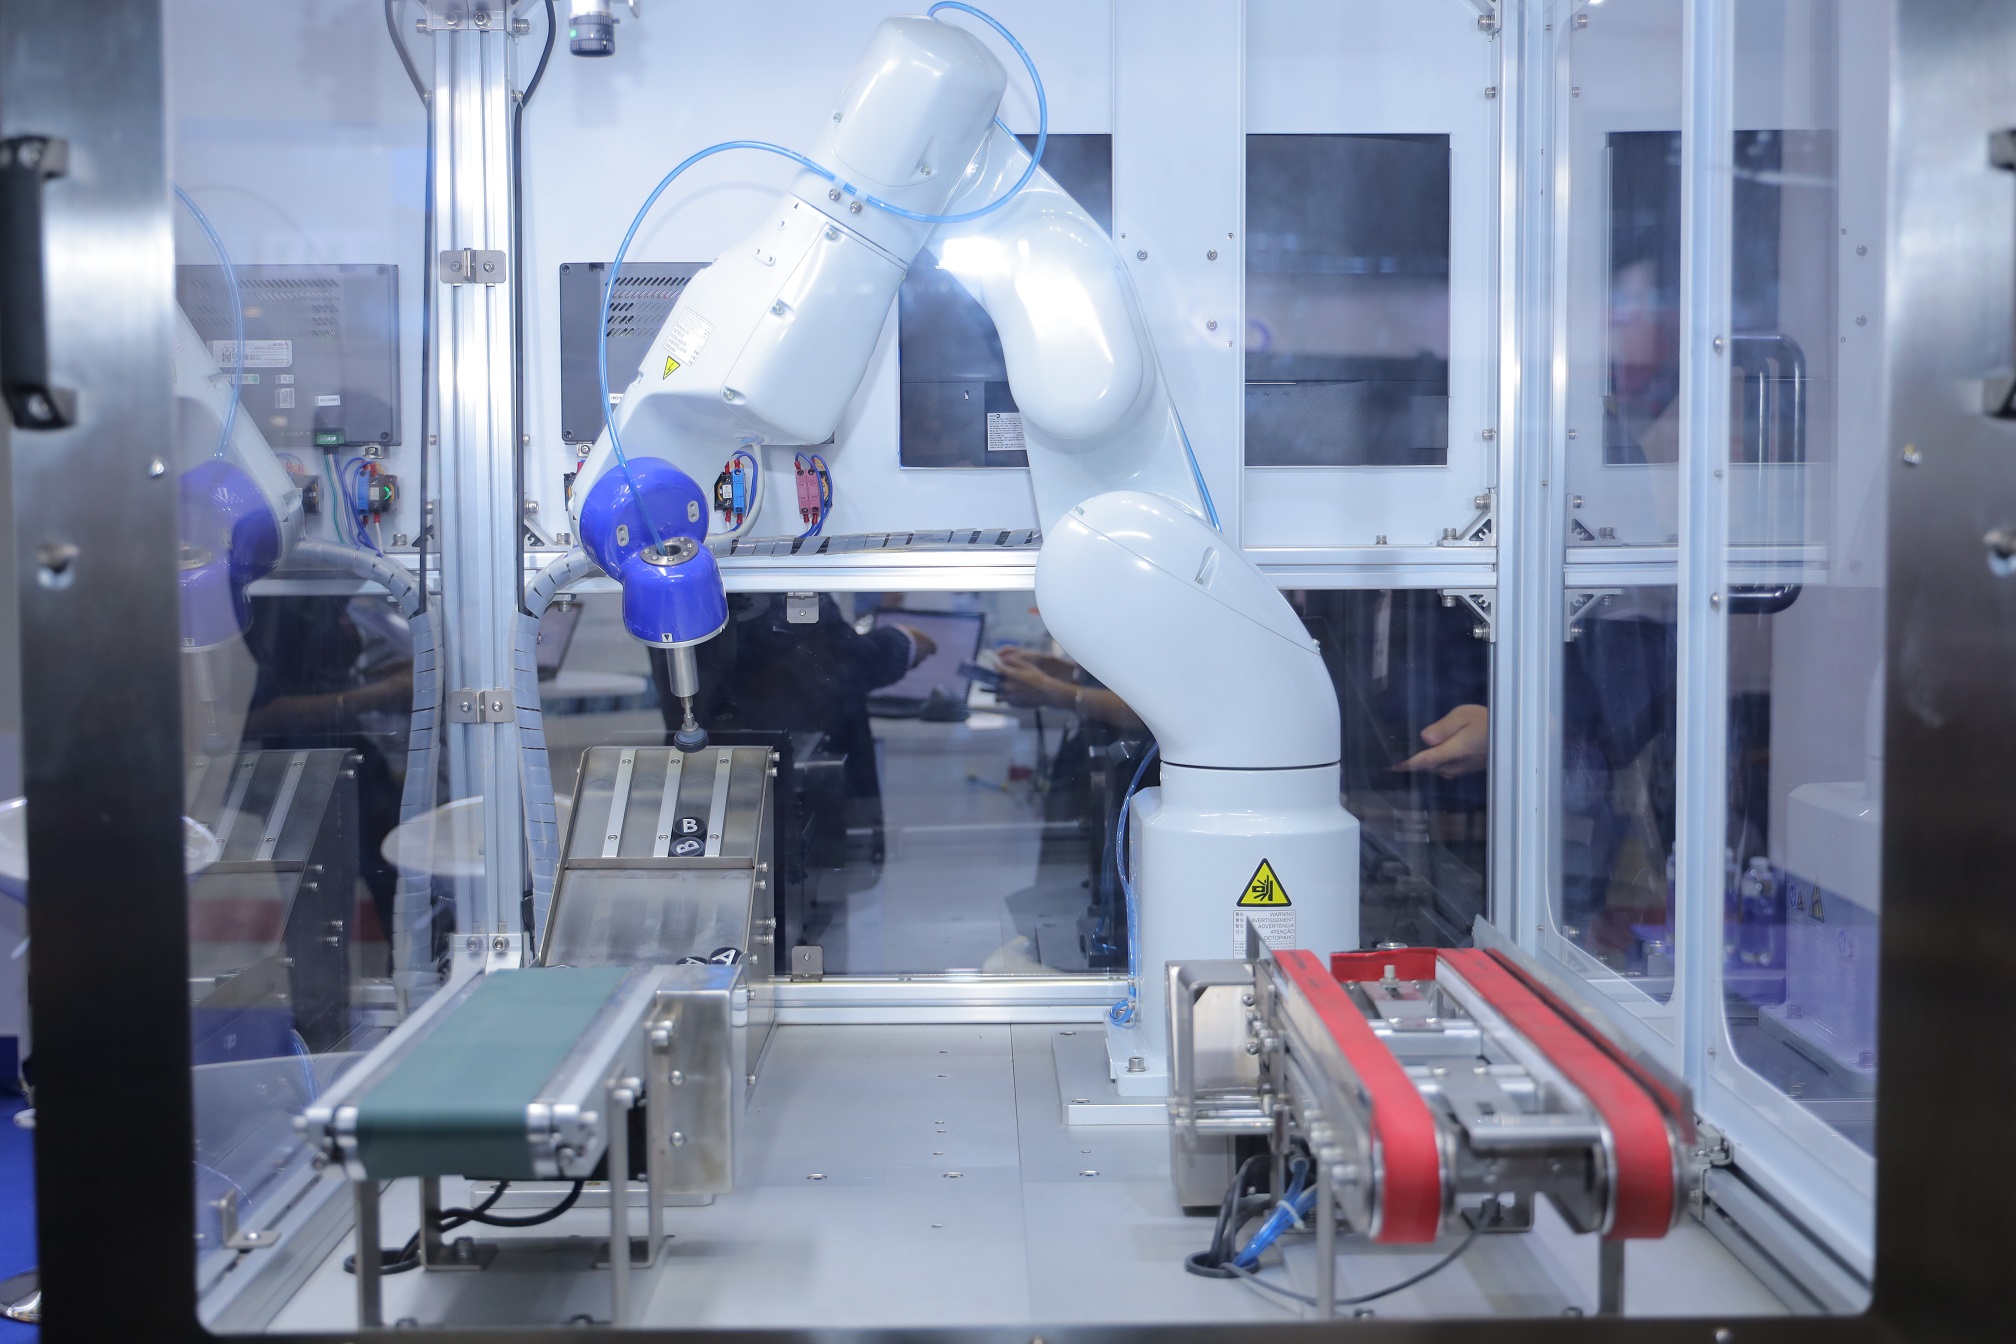 Epson giới thiệu robot công nghiệp ở METALEX - 1. Robot VT6 voi he thong camera